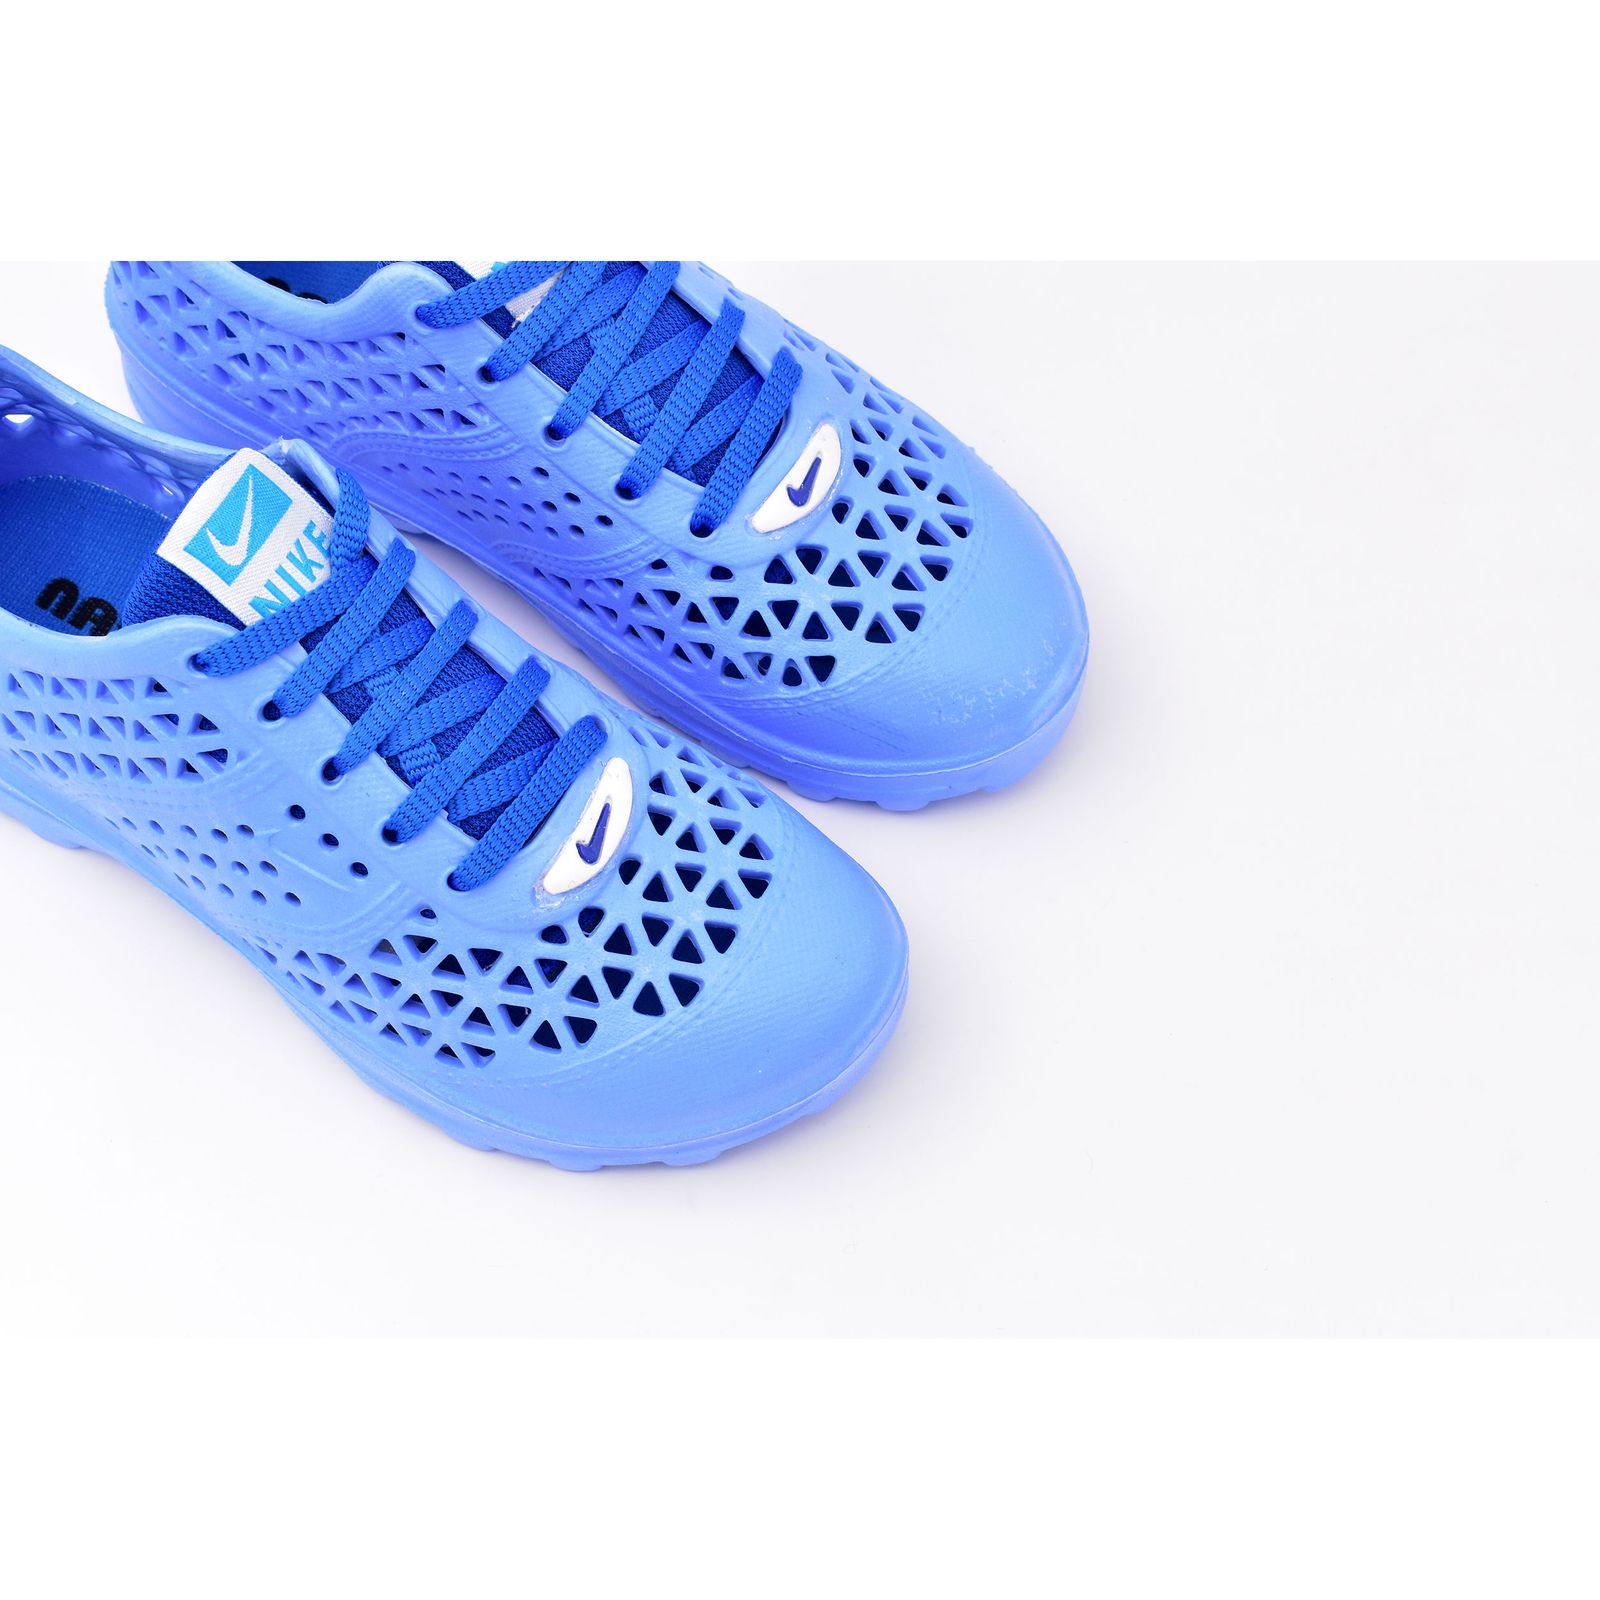  کفش ورزش های آبی زنانه نسیم مدل مرجان کد 8713 -  - 4